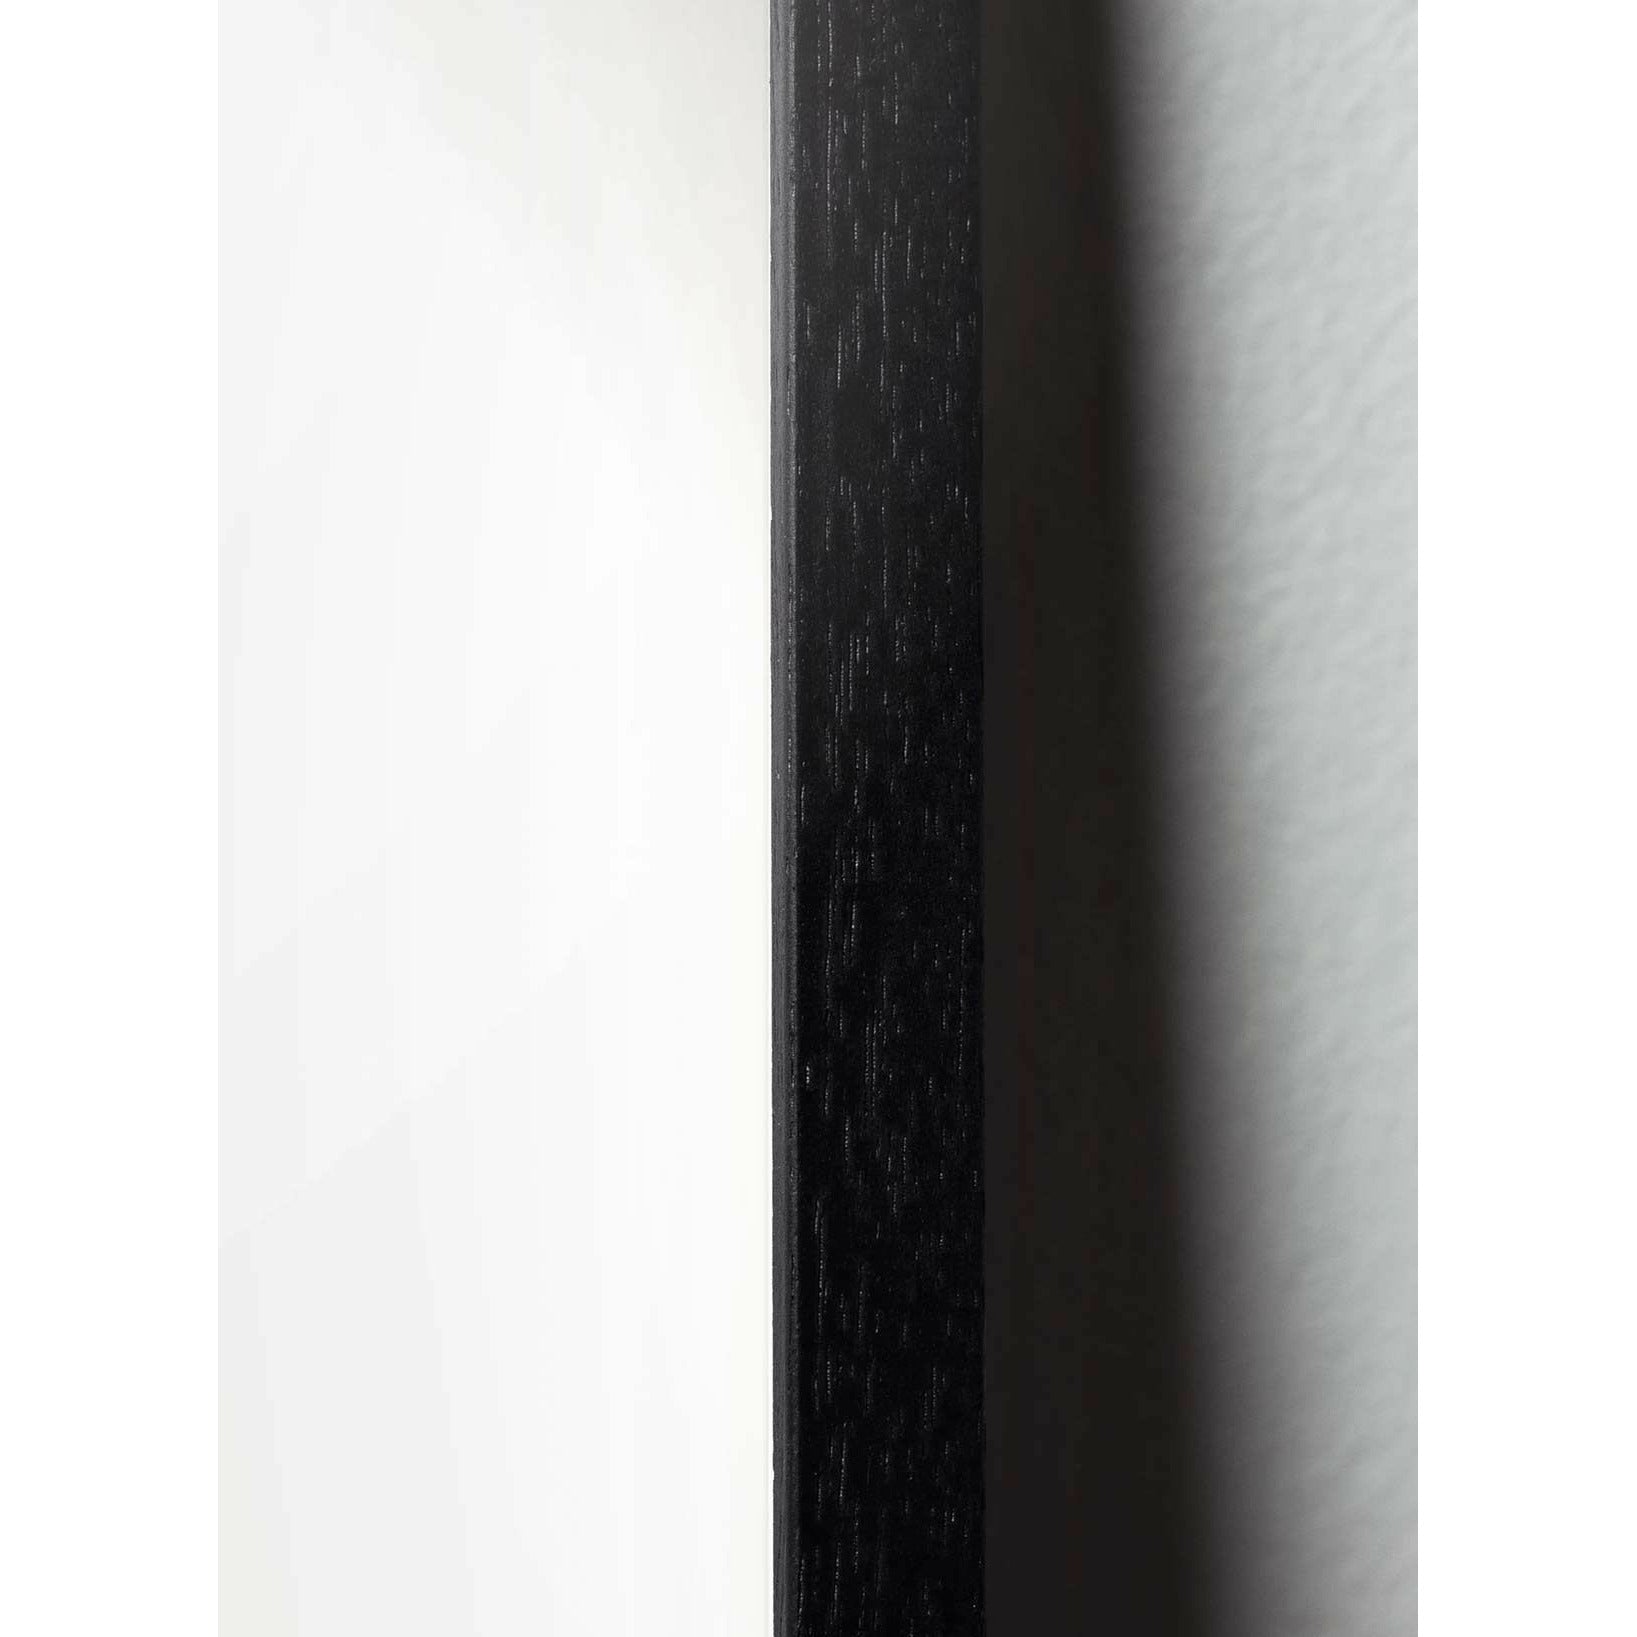 Plakat w formacie jaja pomysłu, rama w czarnym lakierowanym drewnie 50x70 cm, czarny